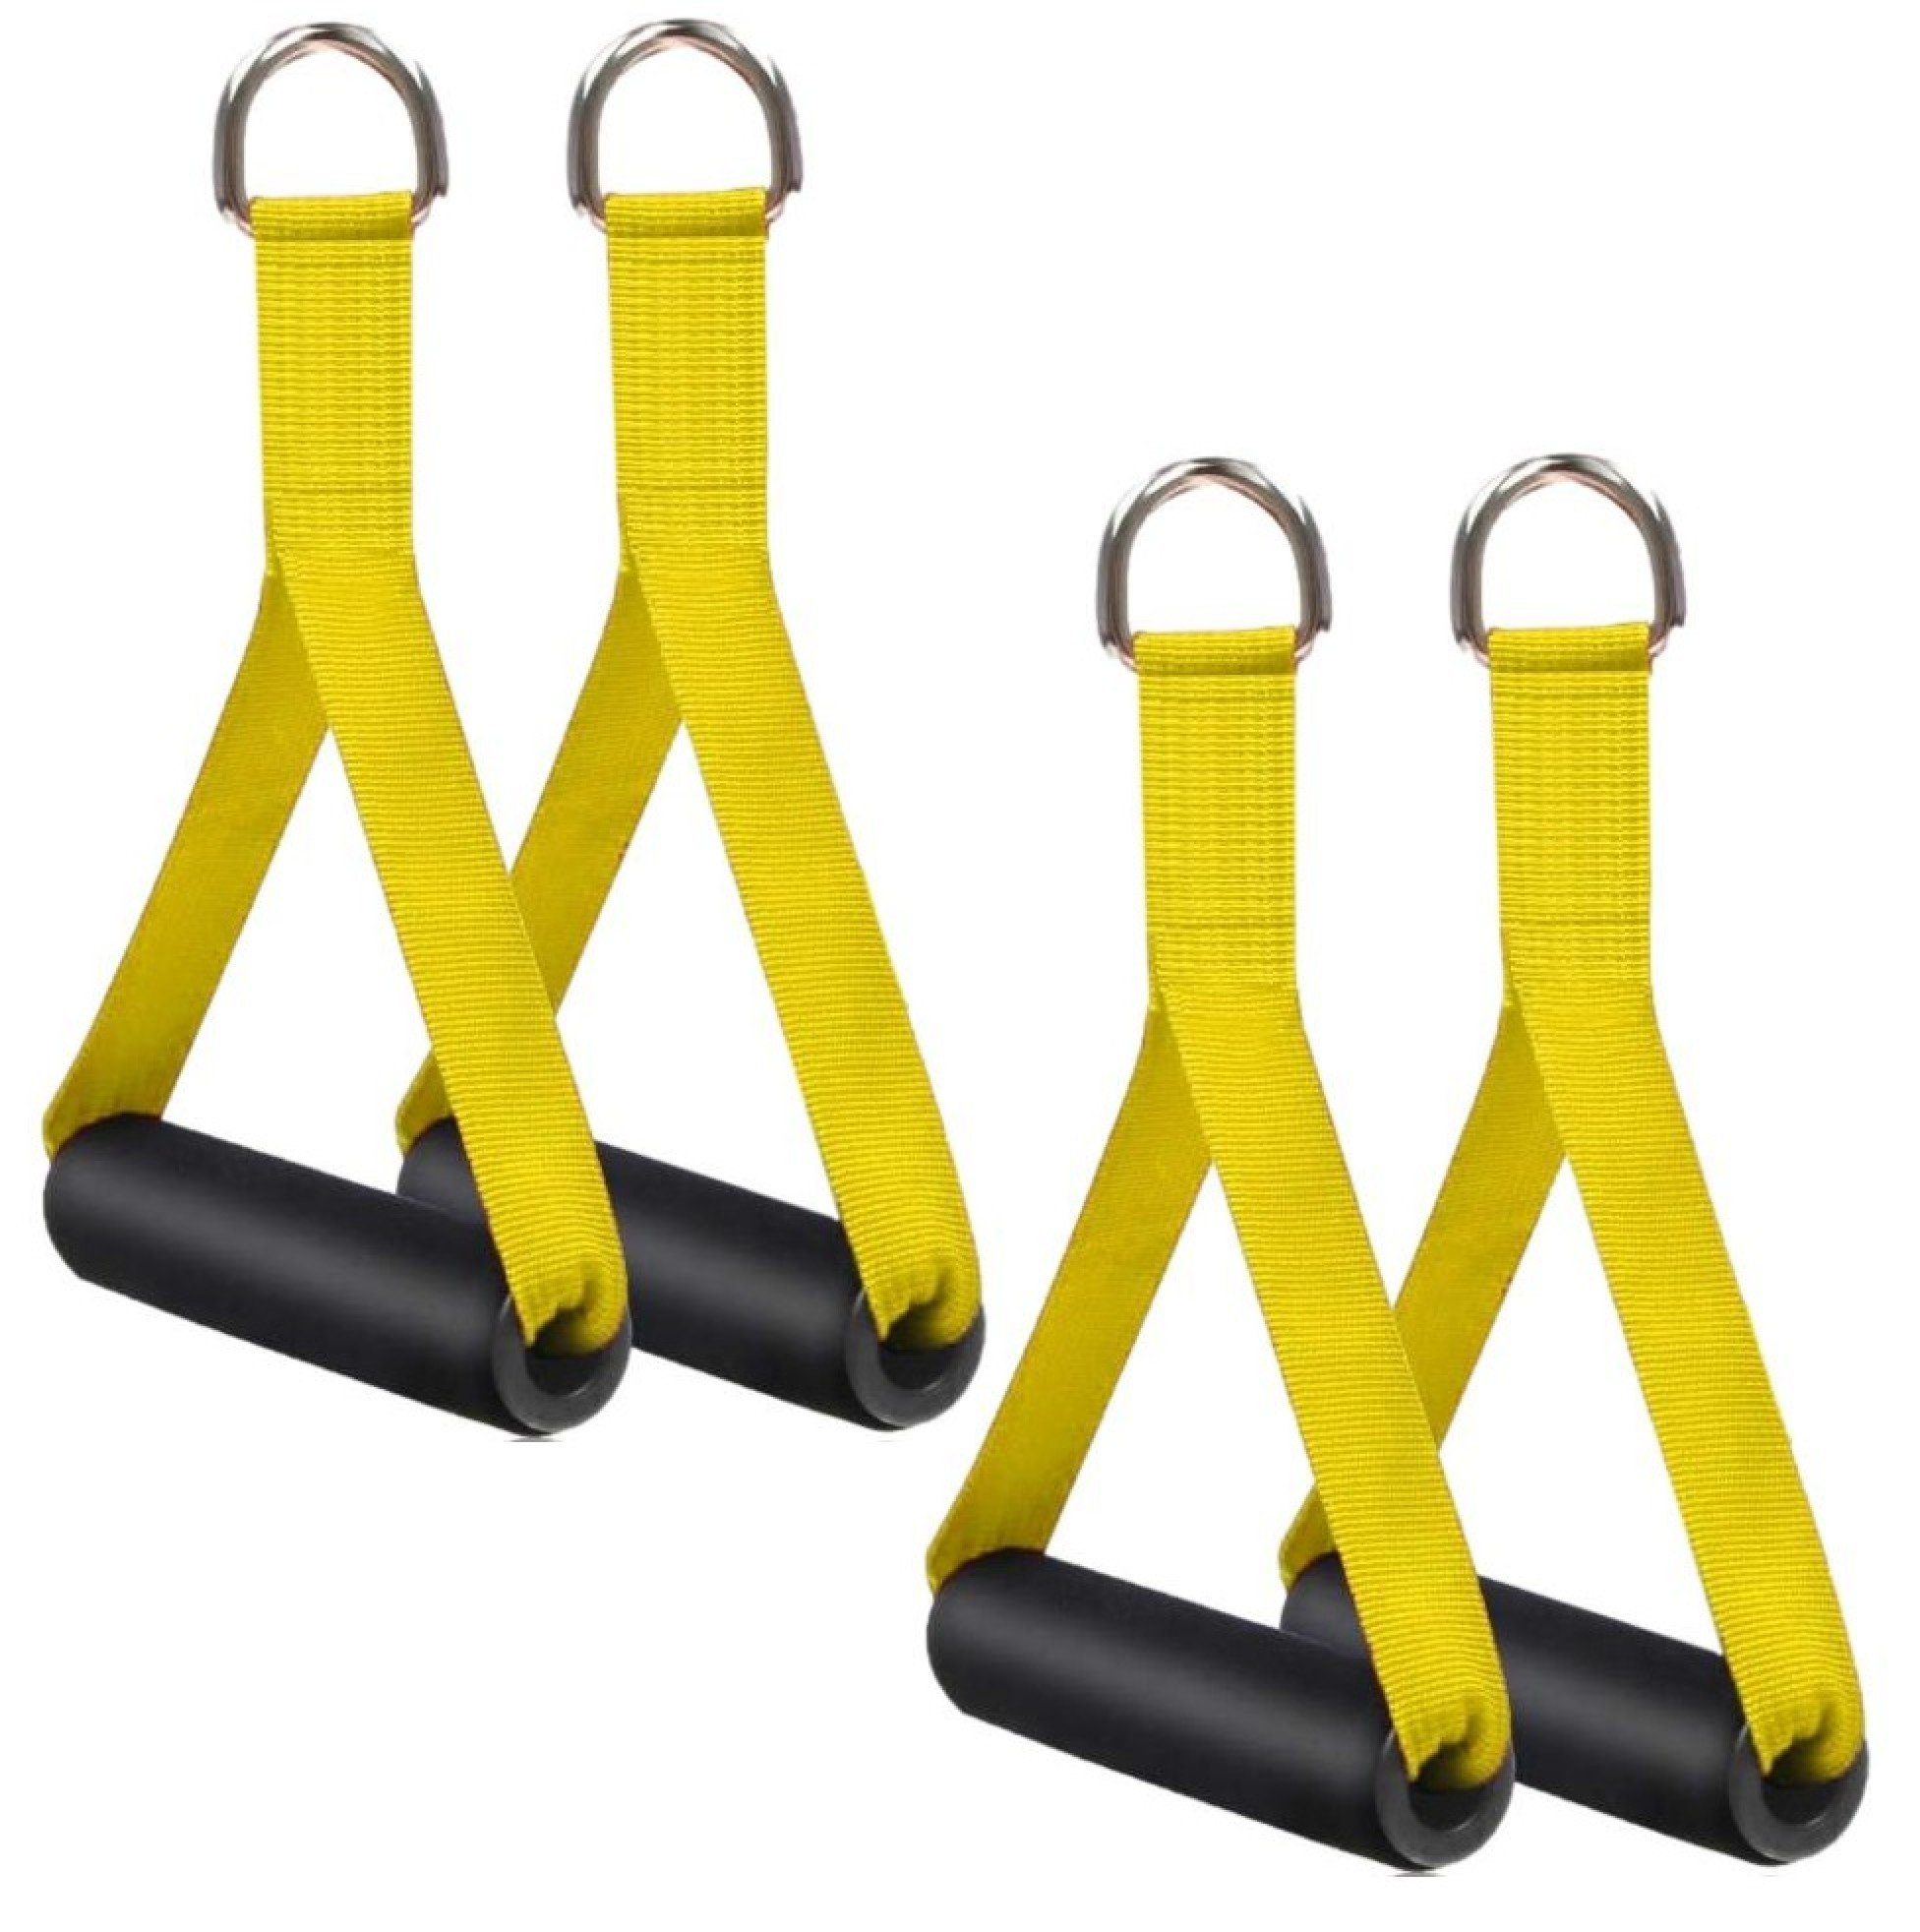 BAYLI Kurzhantel 4er Set [gelb] Widerstandsbänder, Trainingsgriffe für Einhandgriff